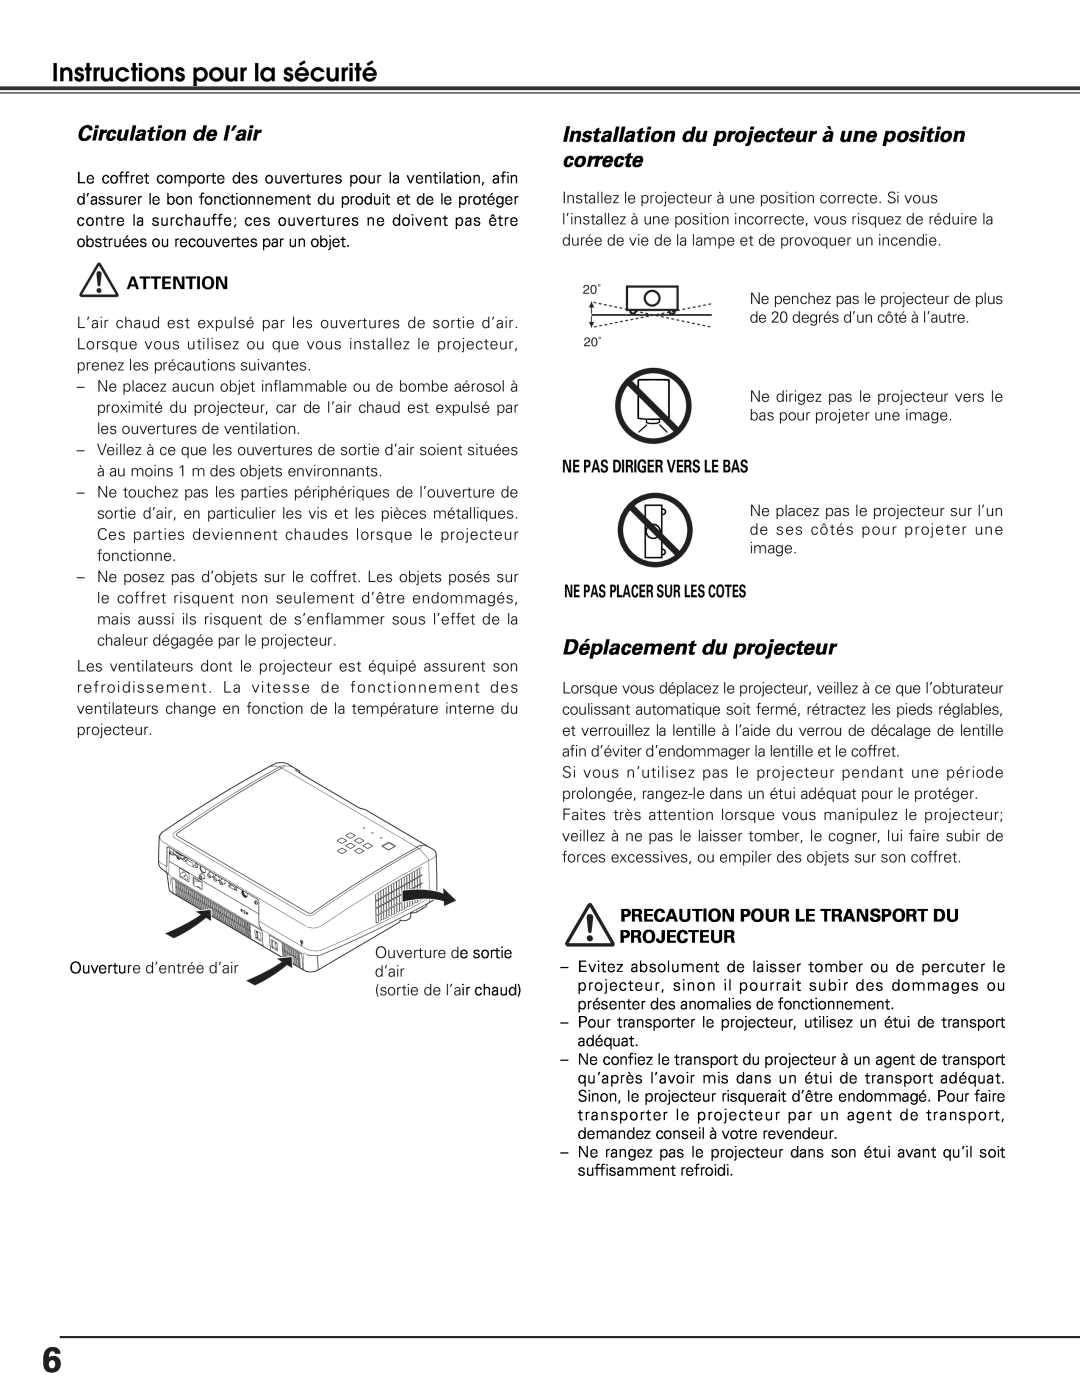 Sanyo PLV-Z5BK manual Instructions pour la sécurité, Circulation de l’air, Déplacement du projecteur 